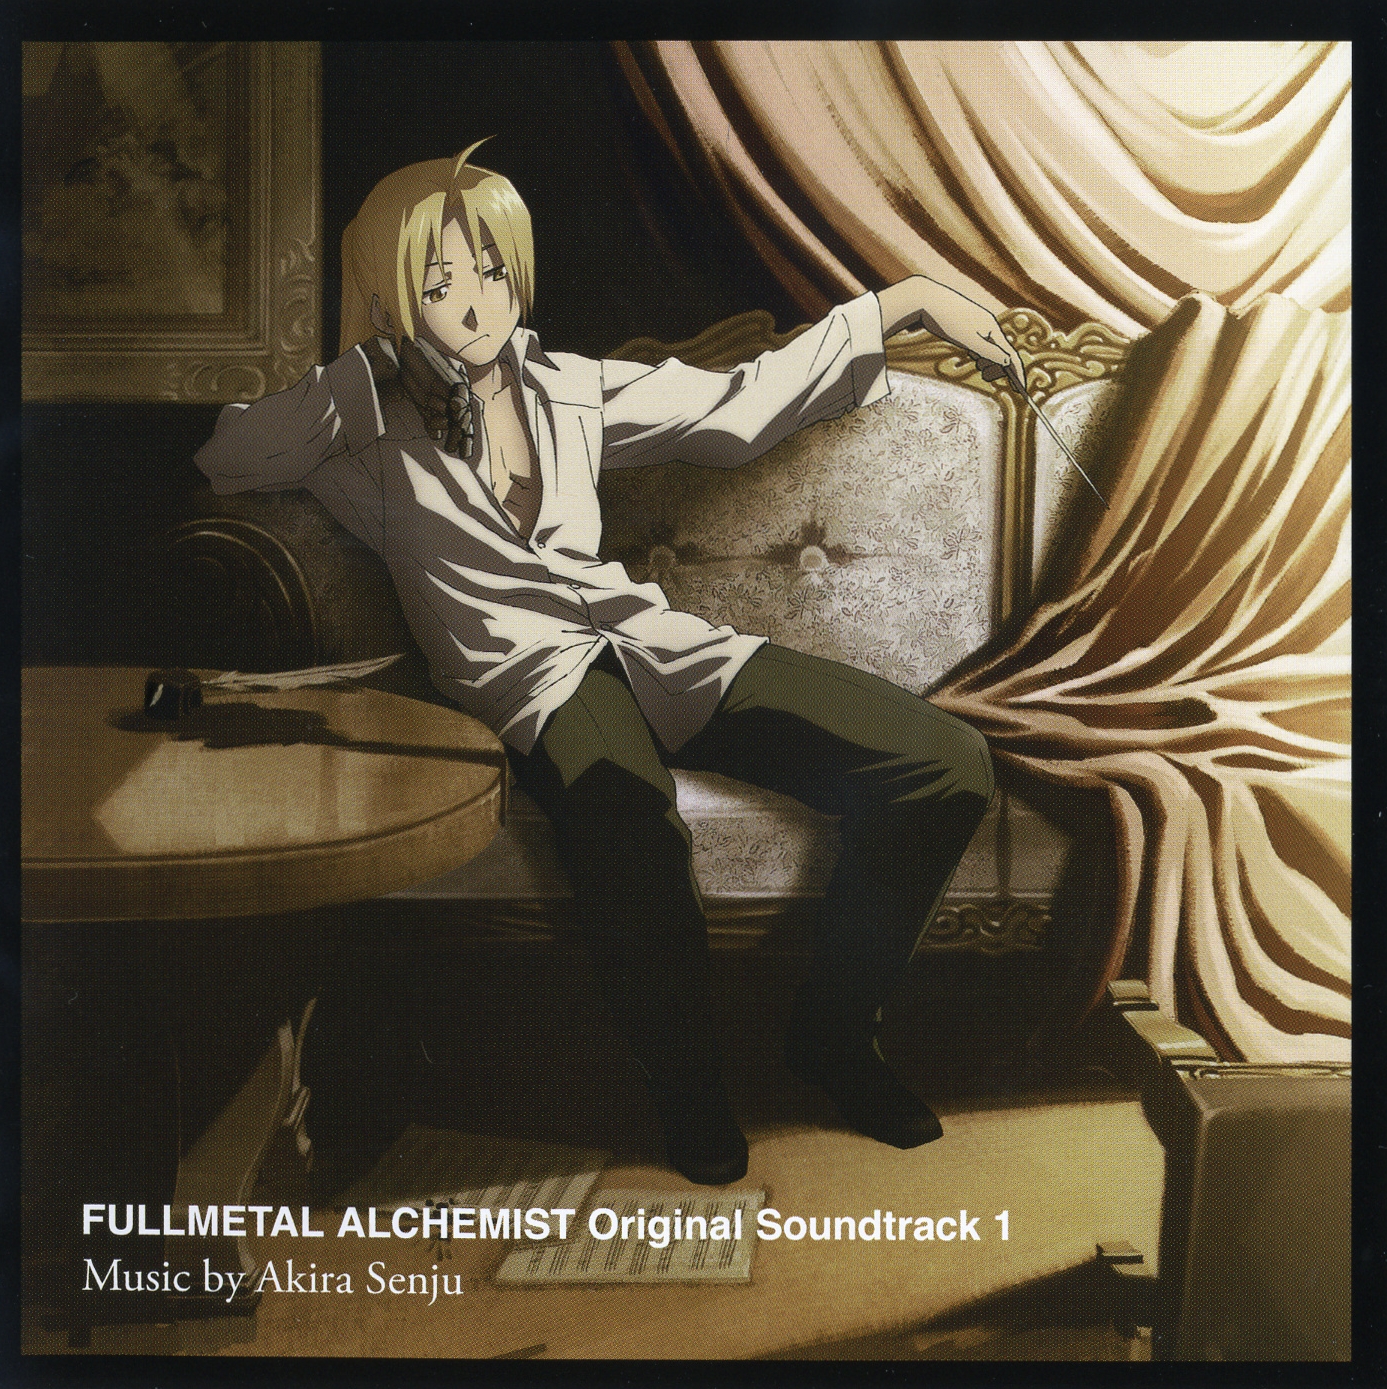 fullmetal alchemist soundtrack free download